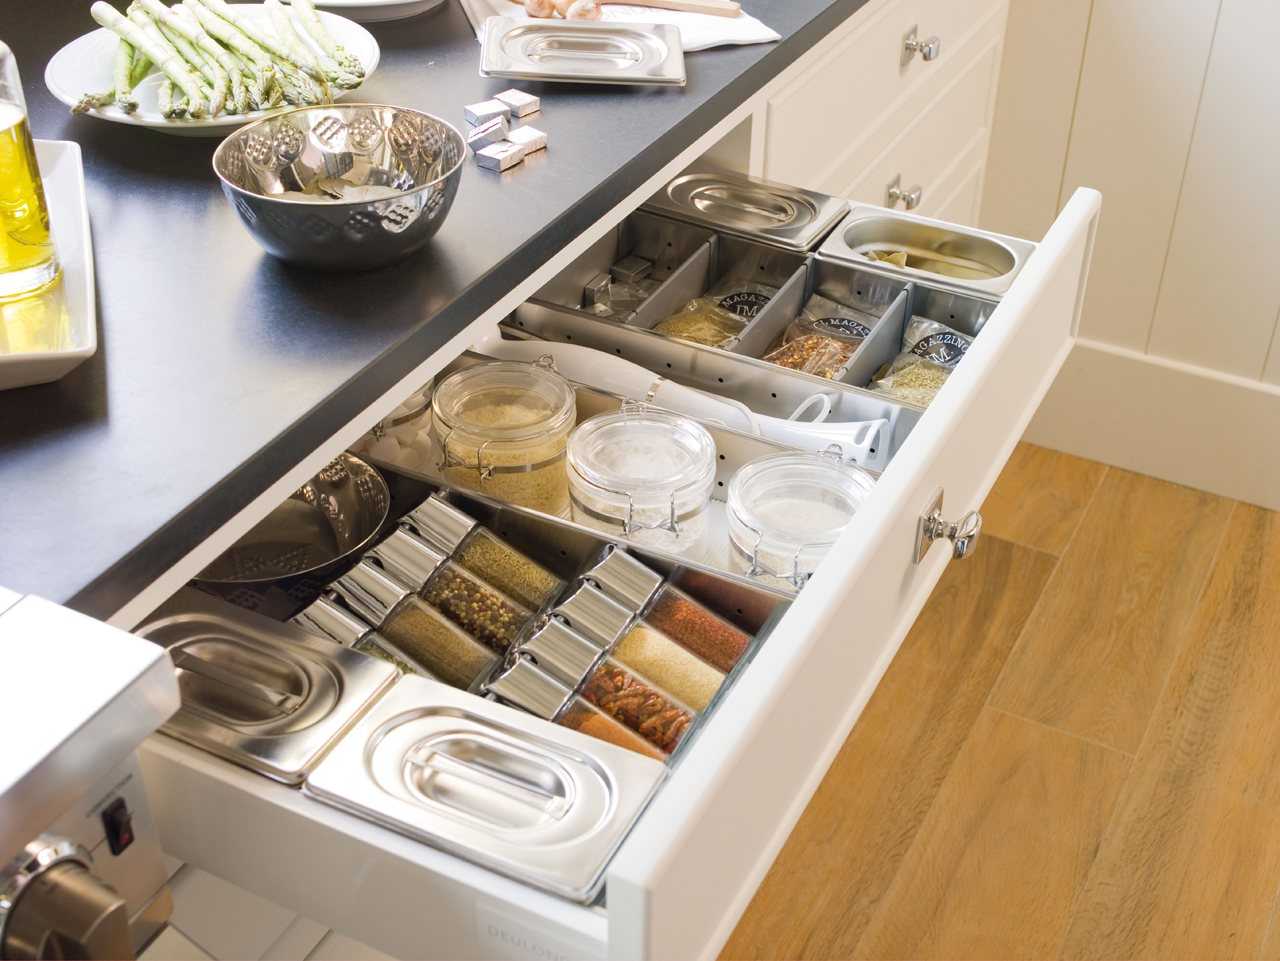 Хранение кастрюль и сковородок на кухне, как хранить кастрюли и сковородки, идеи систем хранения выдвижных, вертикальных в шкафах и ящиках